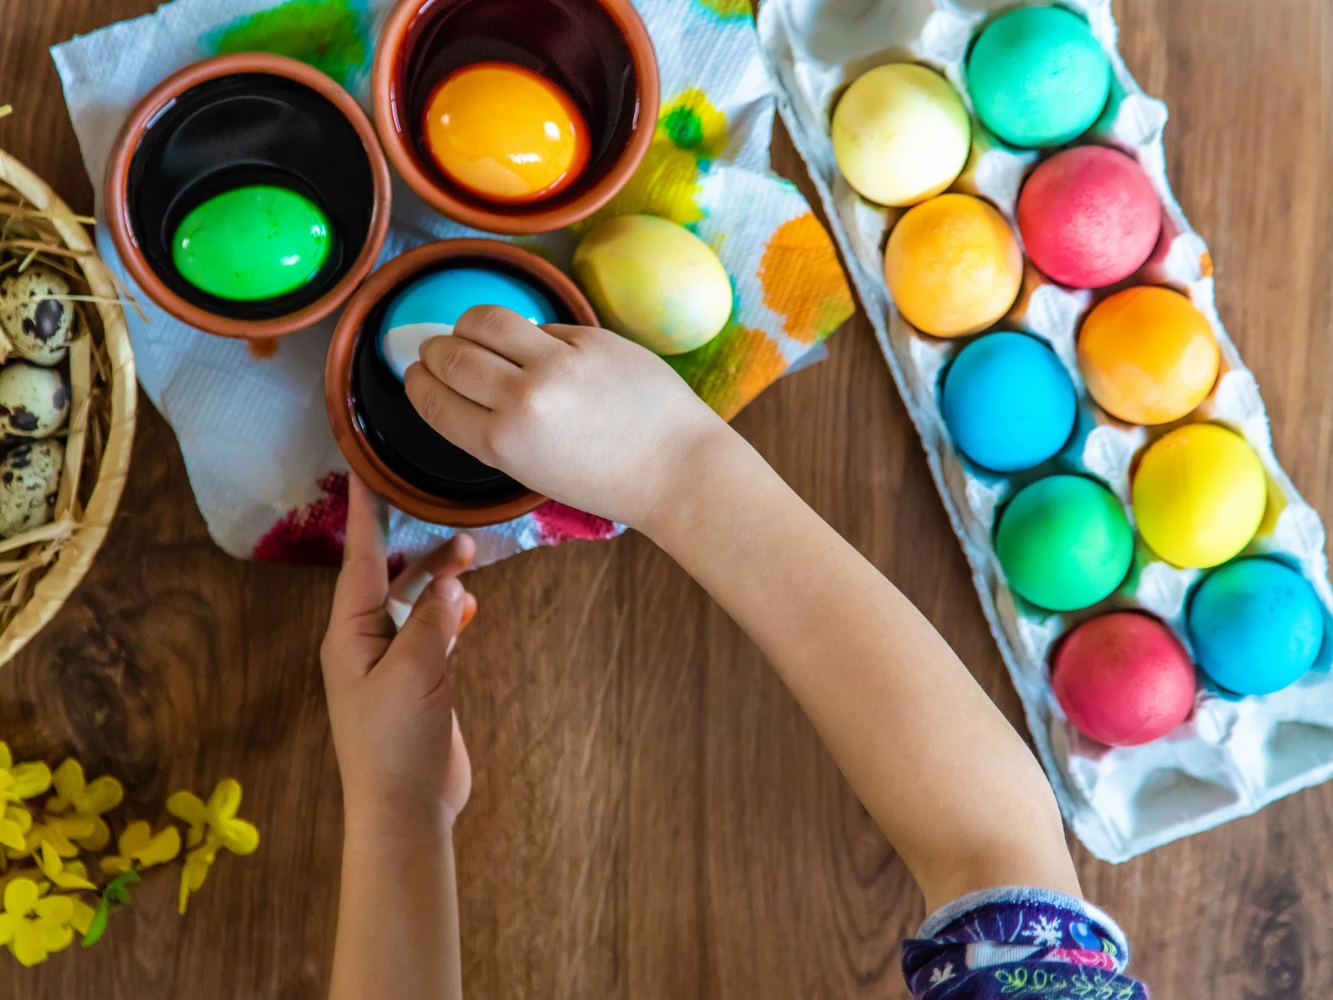 Húsvéti tojásfestés: márványozás és berzselés - videóval mutatjuk, hogy csináld